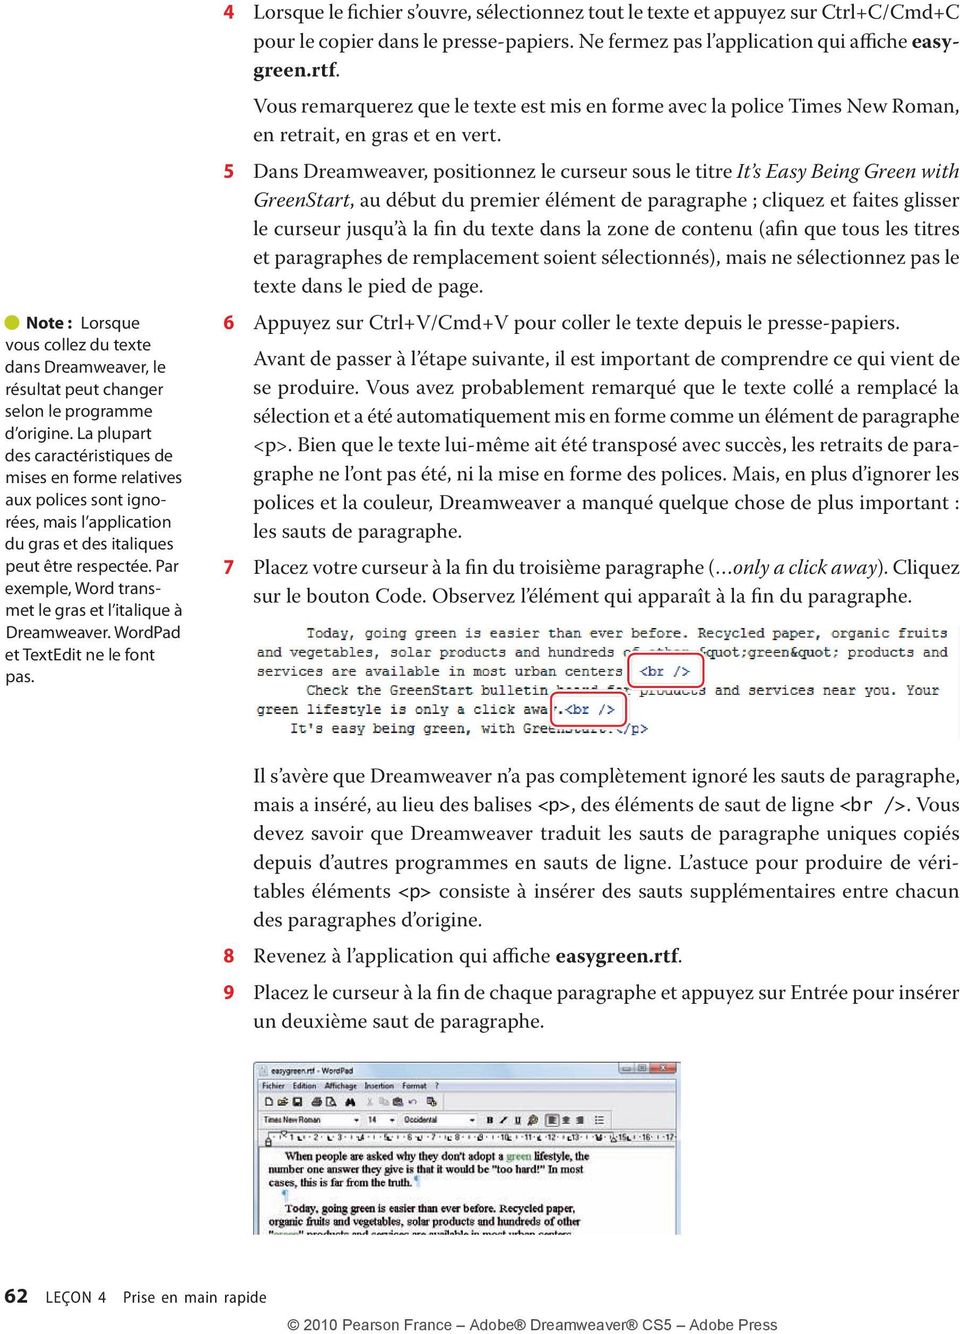 Par exemple, Word transmet le gras et l italique à Dreamweaver. WordPad et TextEdit ne le font pas.